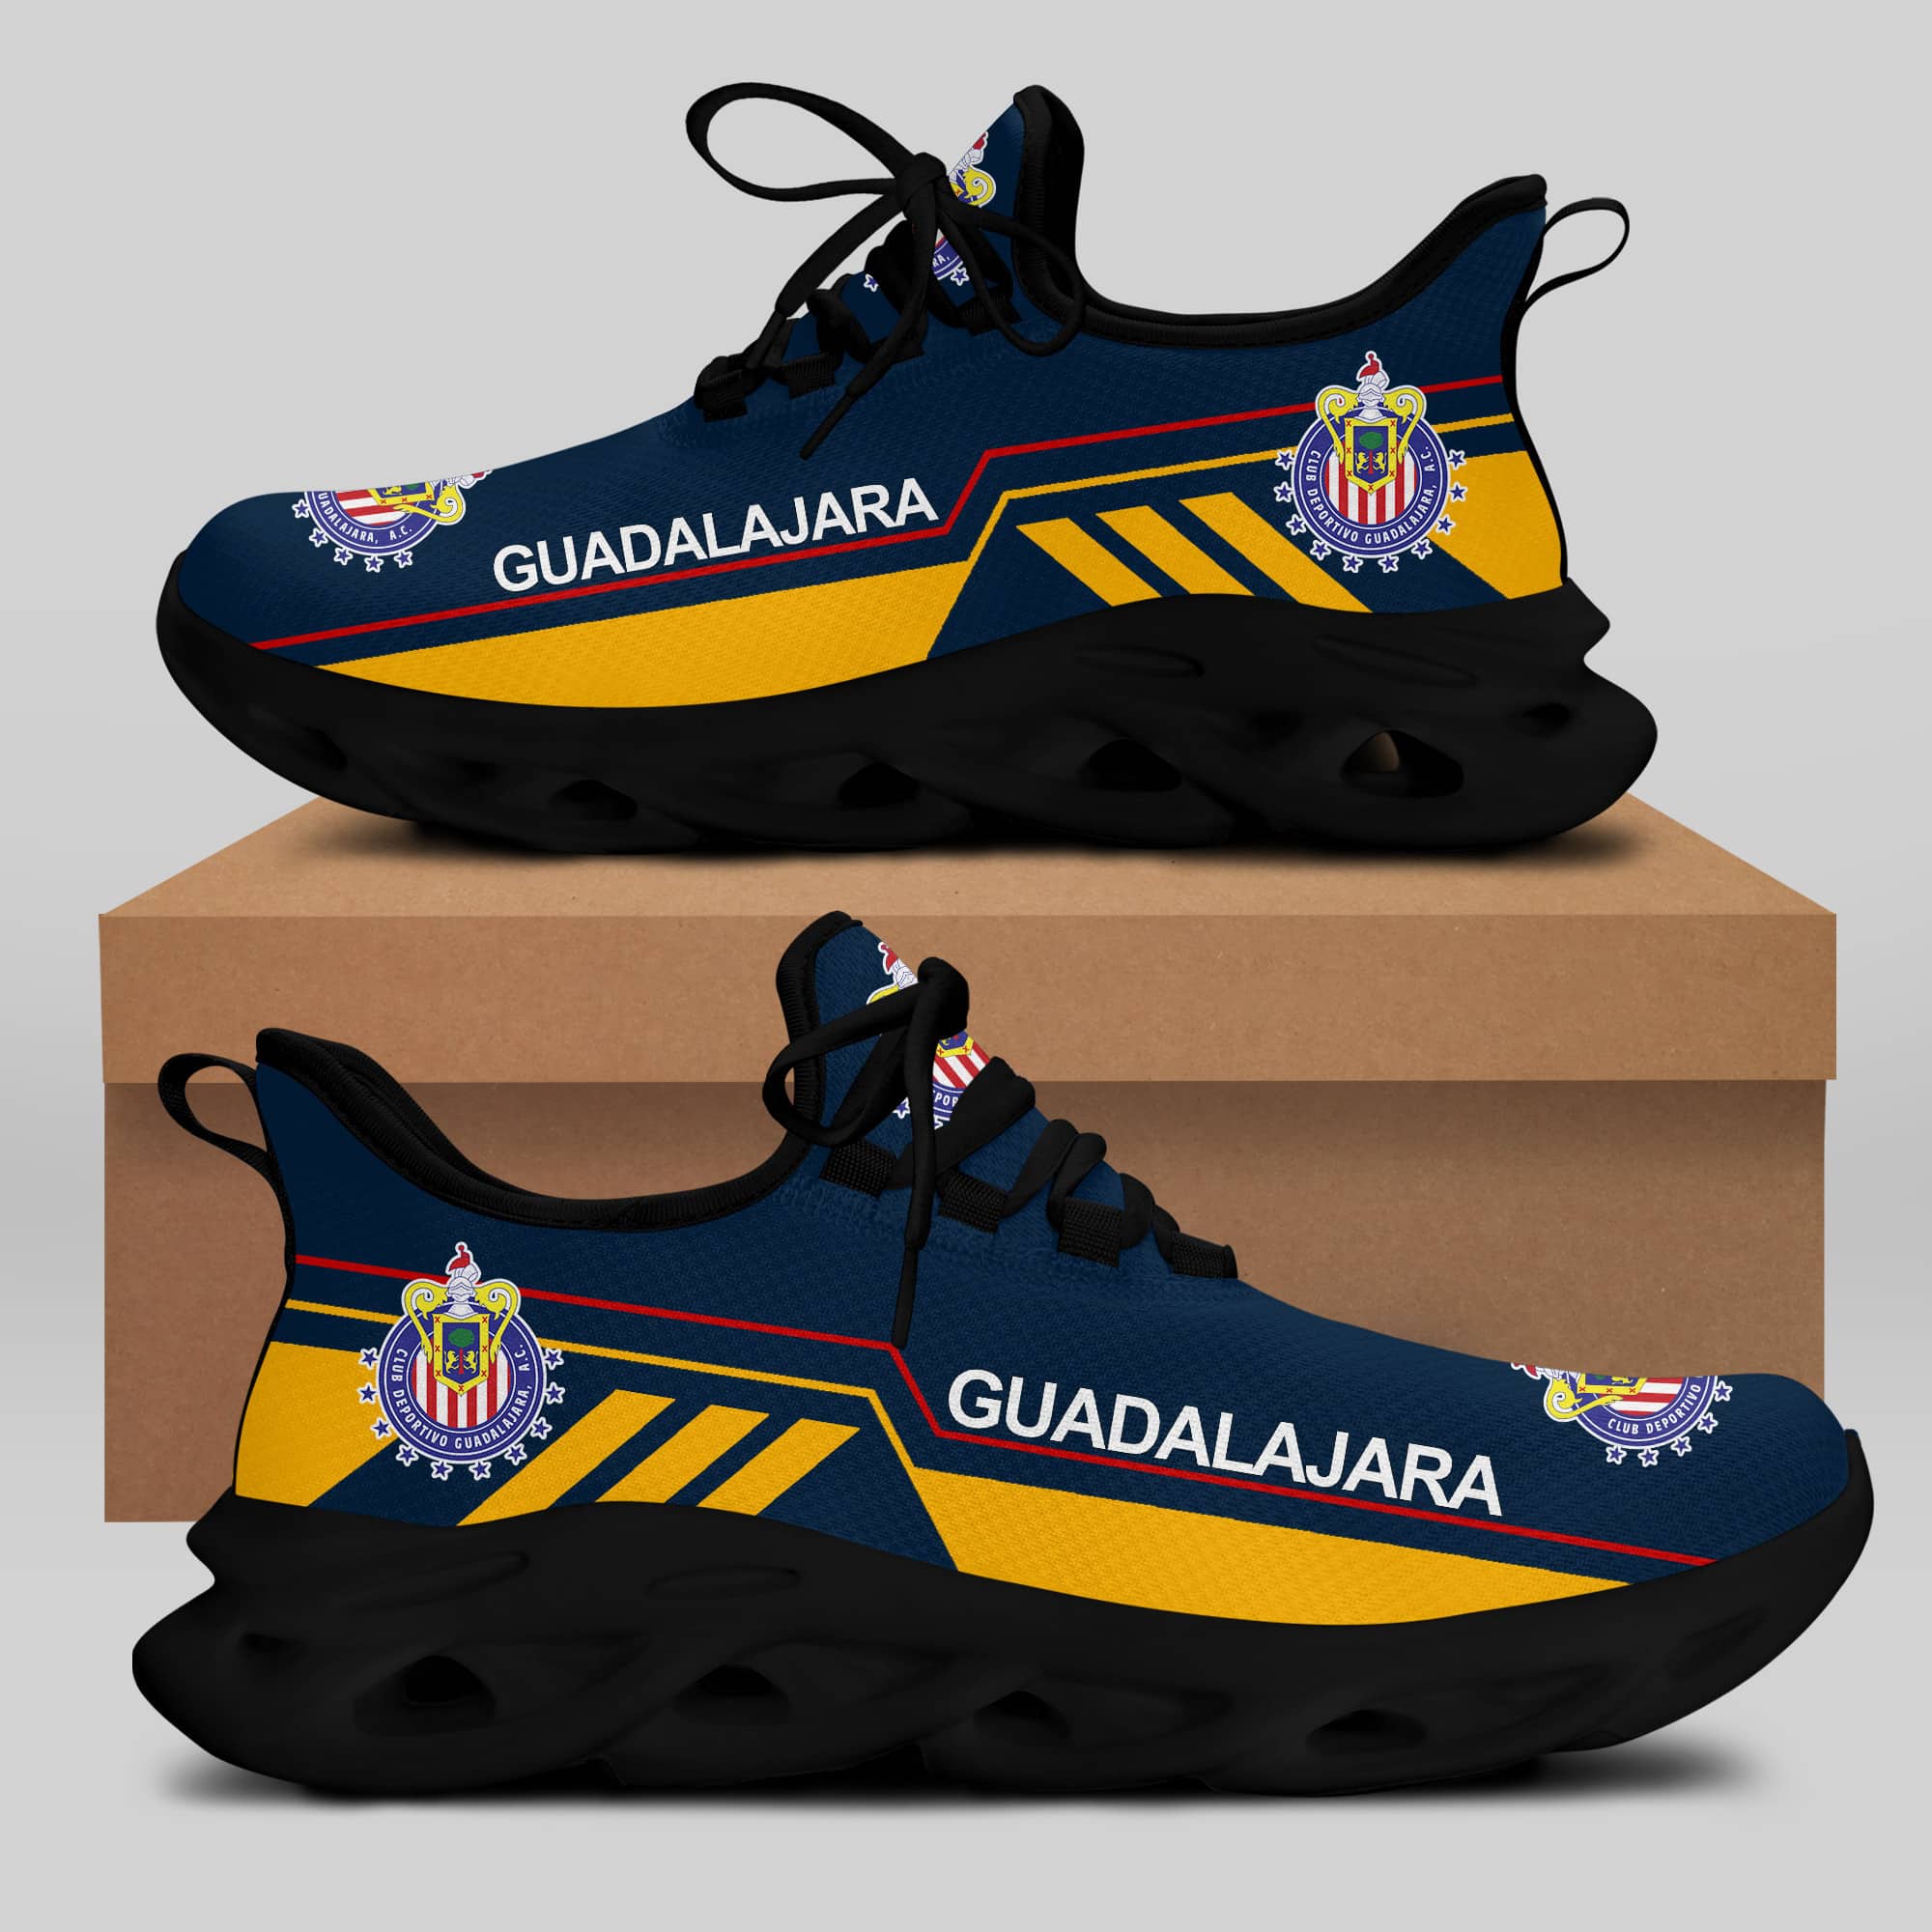 C.D. Guadalajara Running Shoes Max Soul Shoes Sneakers Ver 9 1